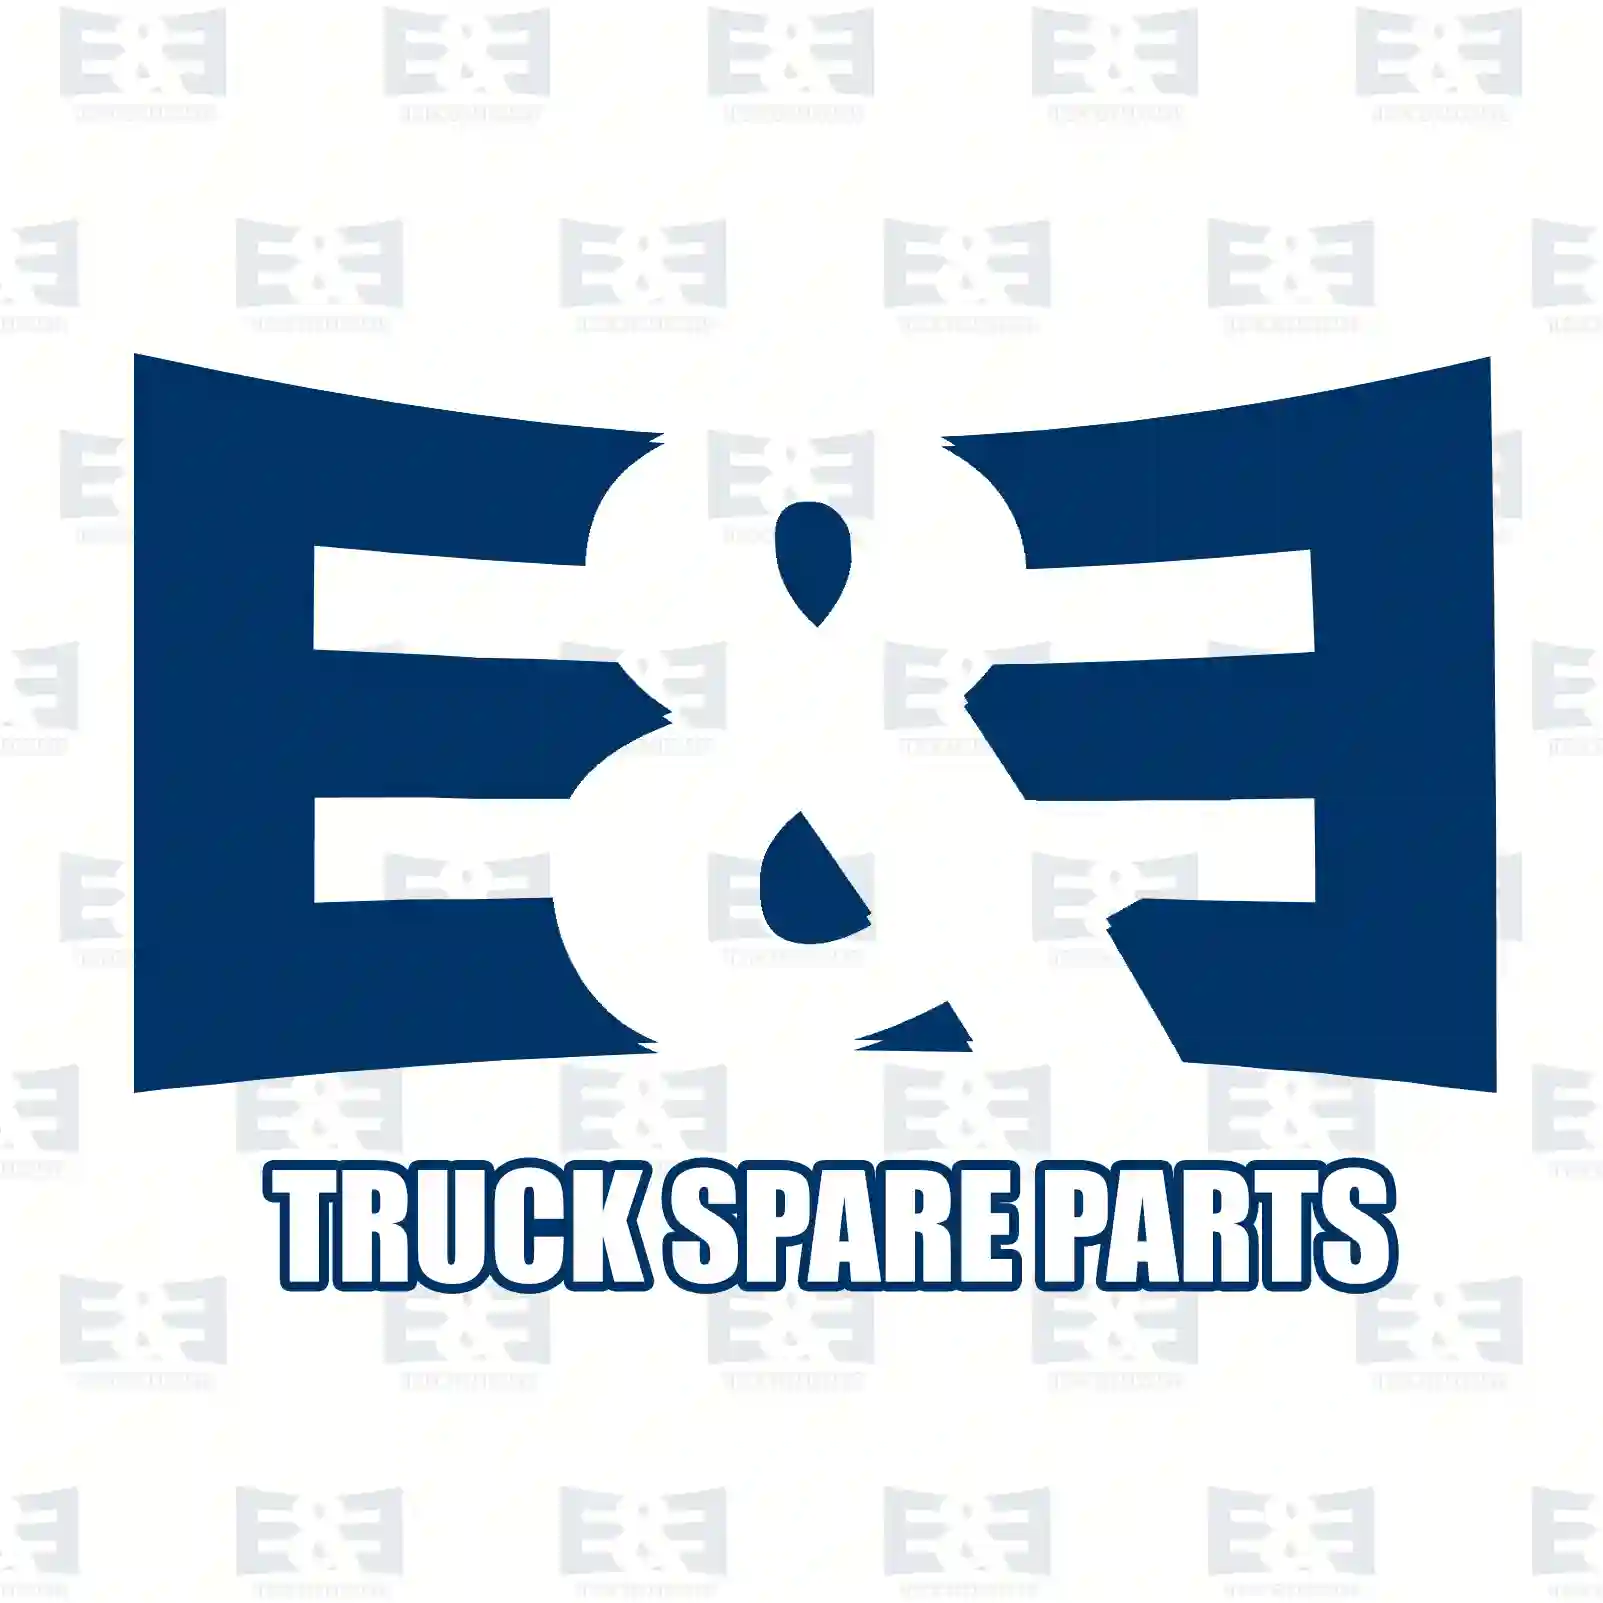 Fan clutch, 2E2201496, 51066300094, 51066300113, 51066300117 ||  2E2201496 E&E Truck Spare Parts | Truck Spare Parts, Auotomotive Spare Parts Fan clutch, 2E2201496, 51066300094, 51066300113, 51066300117 ||  2E2201496 E&E Truck Spare Parts | Truck Spare Parts, Auotomotive Spare Parts